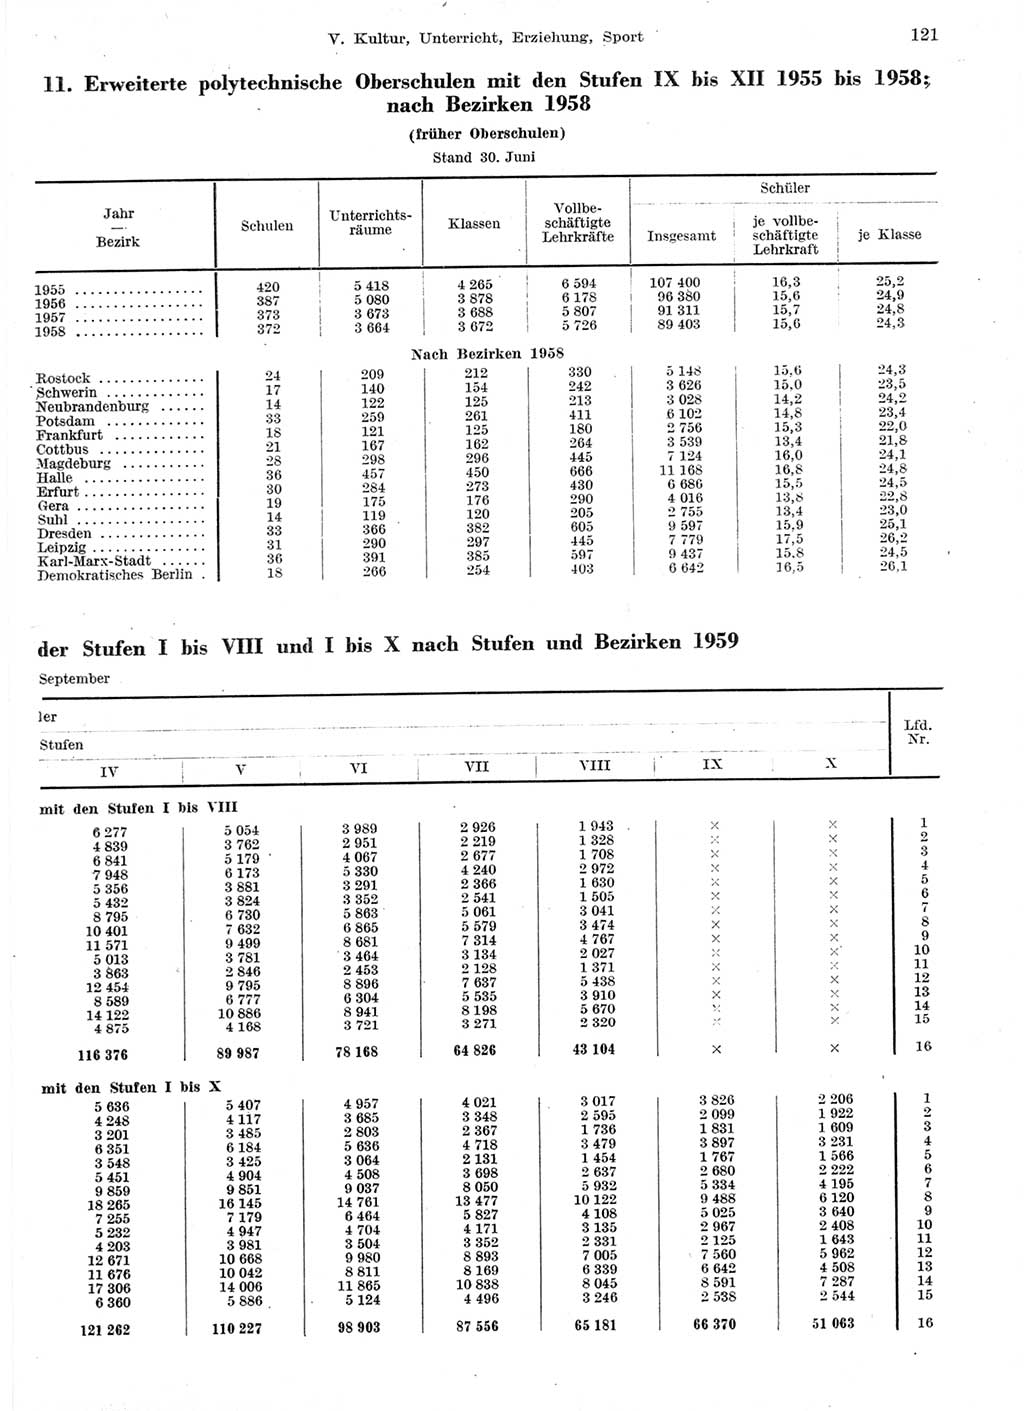 Statistisches Jahrbuch der Deutschen Demokratischen Republik (DDR) 1959, Seite 121 (Stat. Jb. DDR 1959, S. 121)